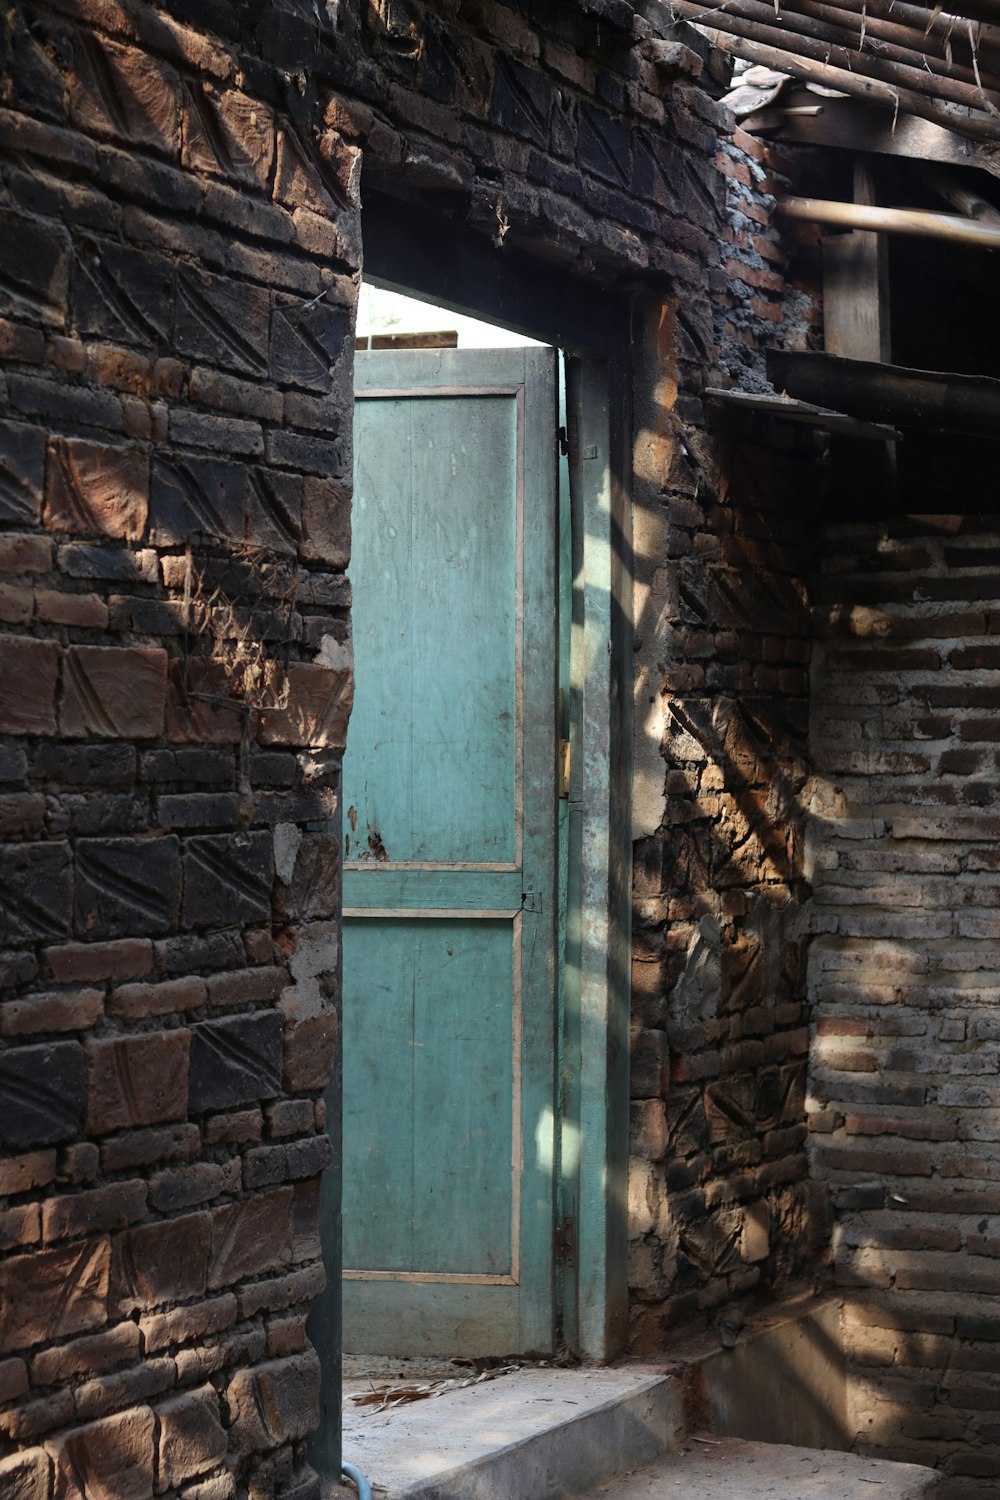 a green door is open in a brick building